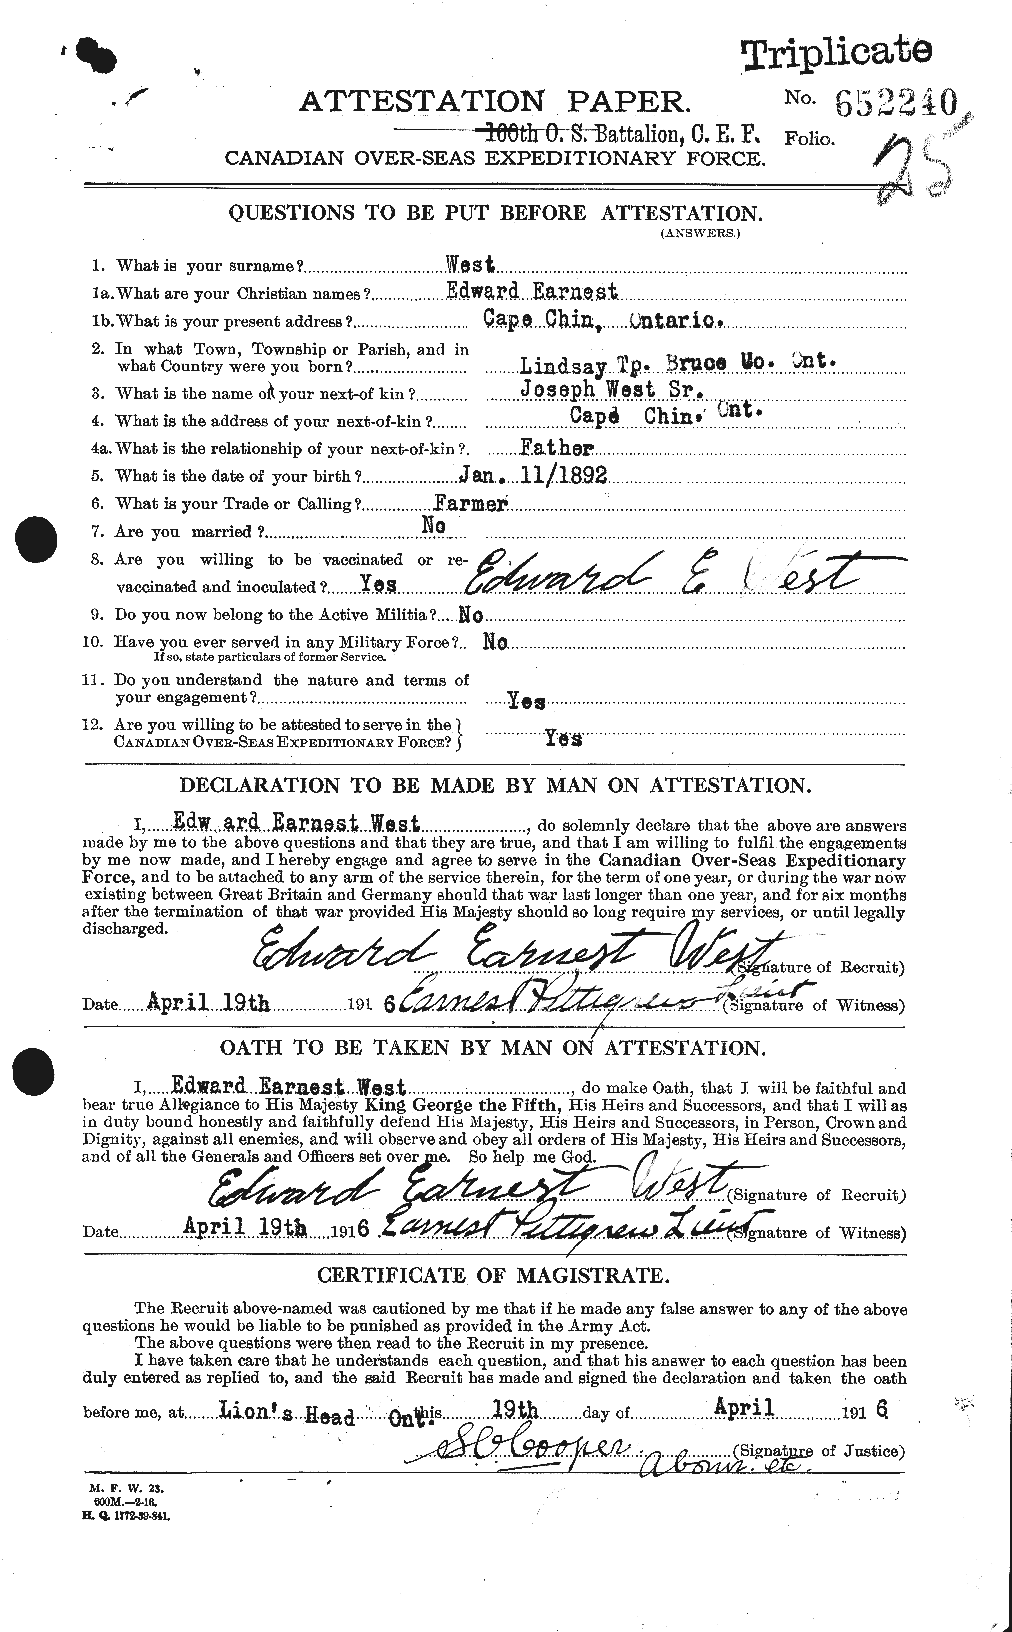 Dossiers du Personnel de la Première Guerre mondiale - CEC 666121a